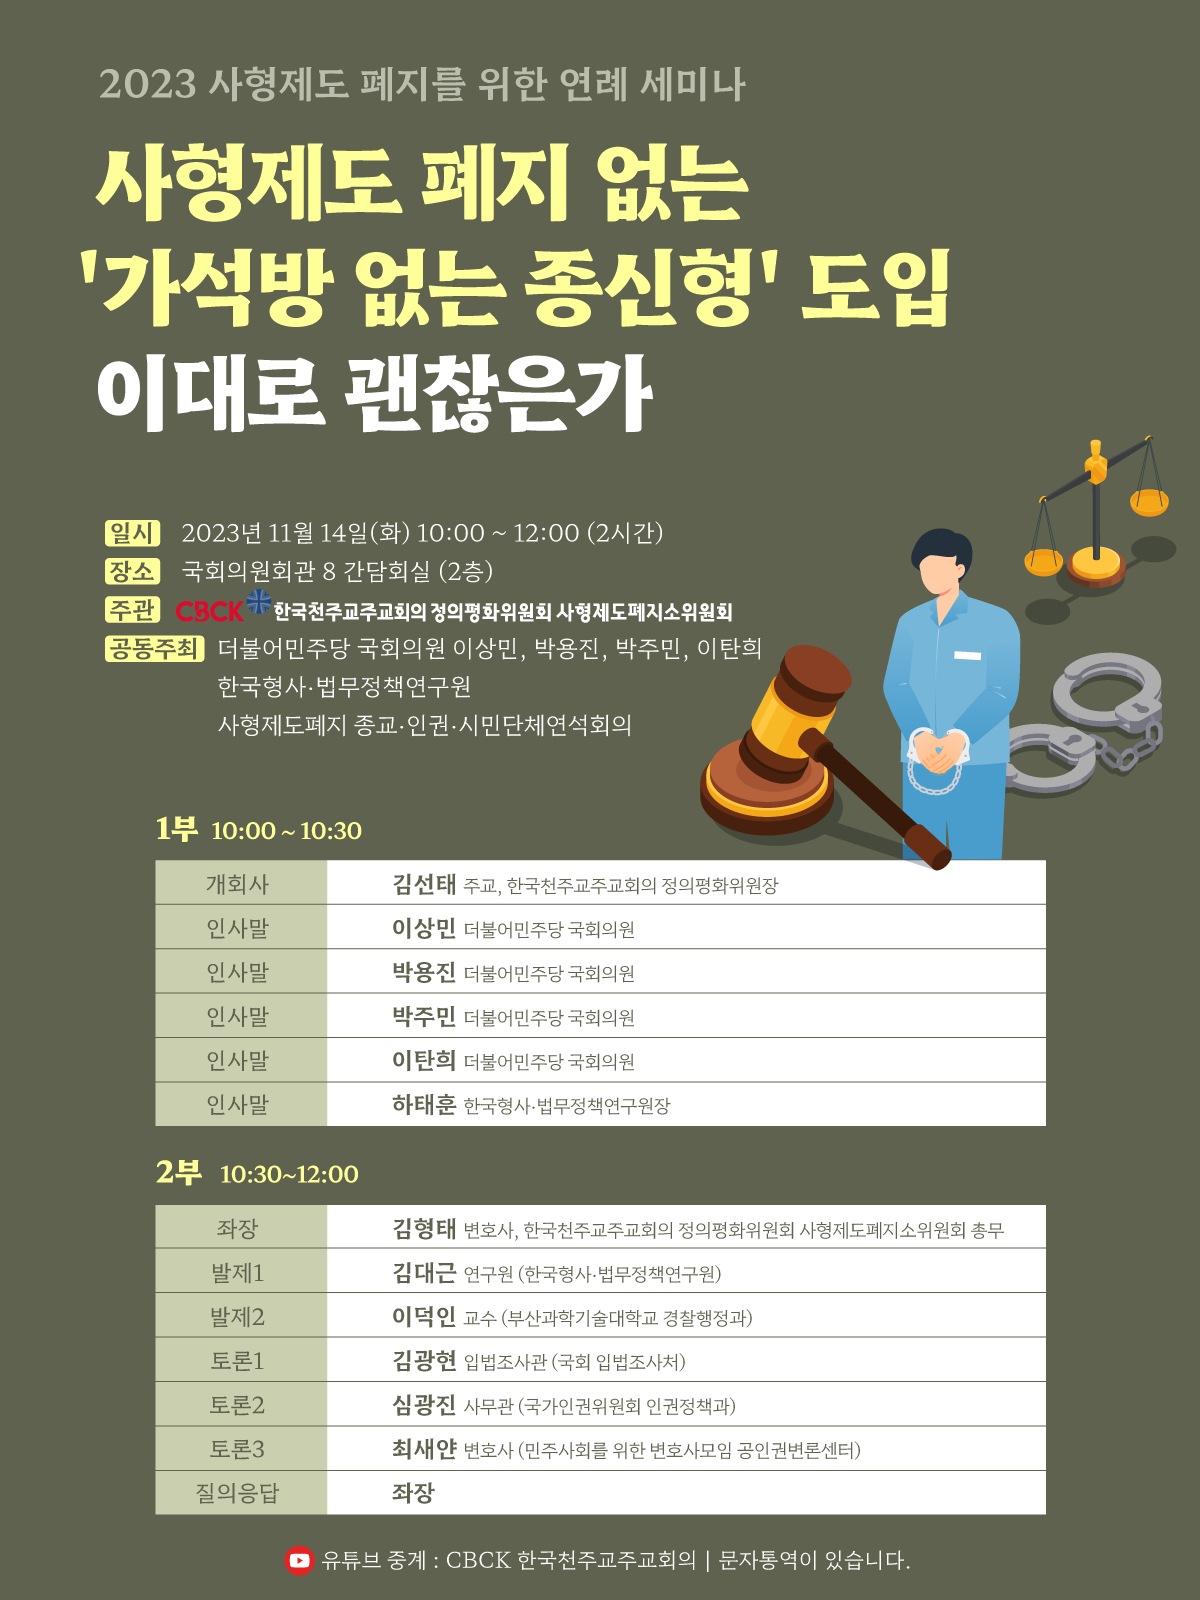 한국형사·법무정책연구원 - 천주교인권위원회 2023년 사형제 폐지를 위한 공동 세미나